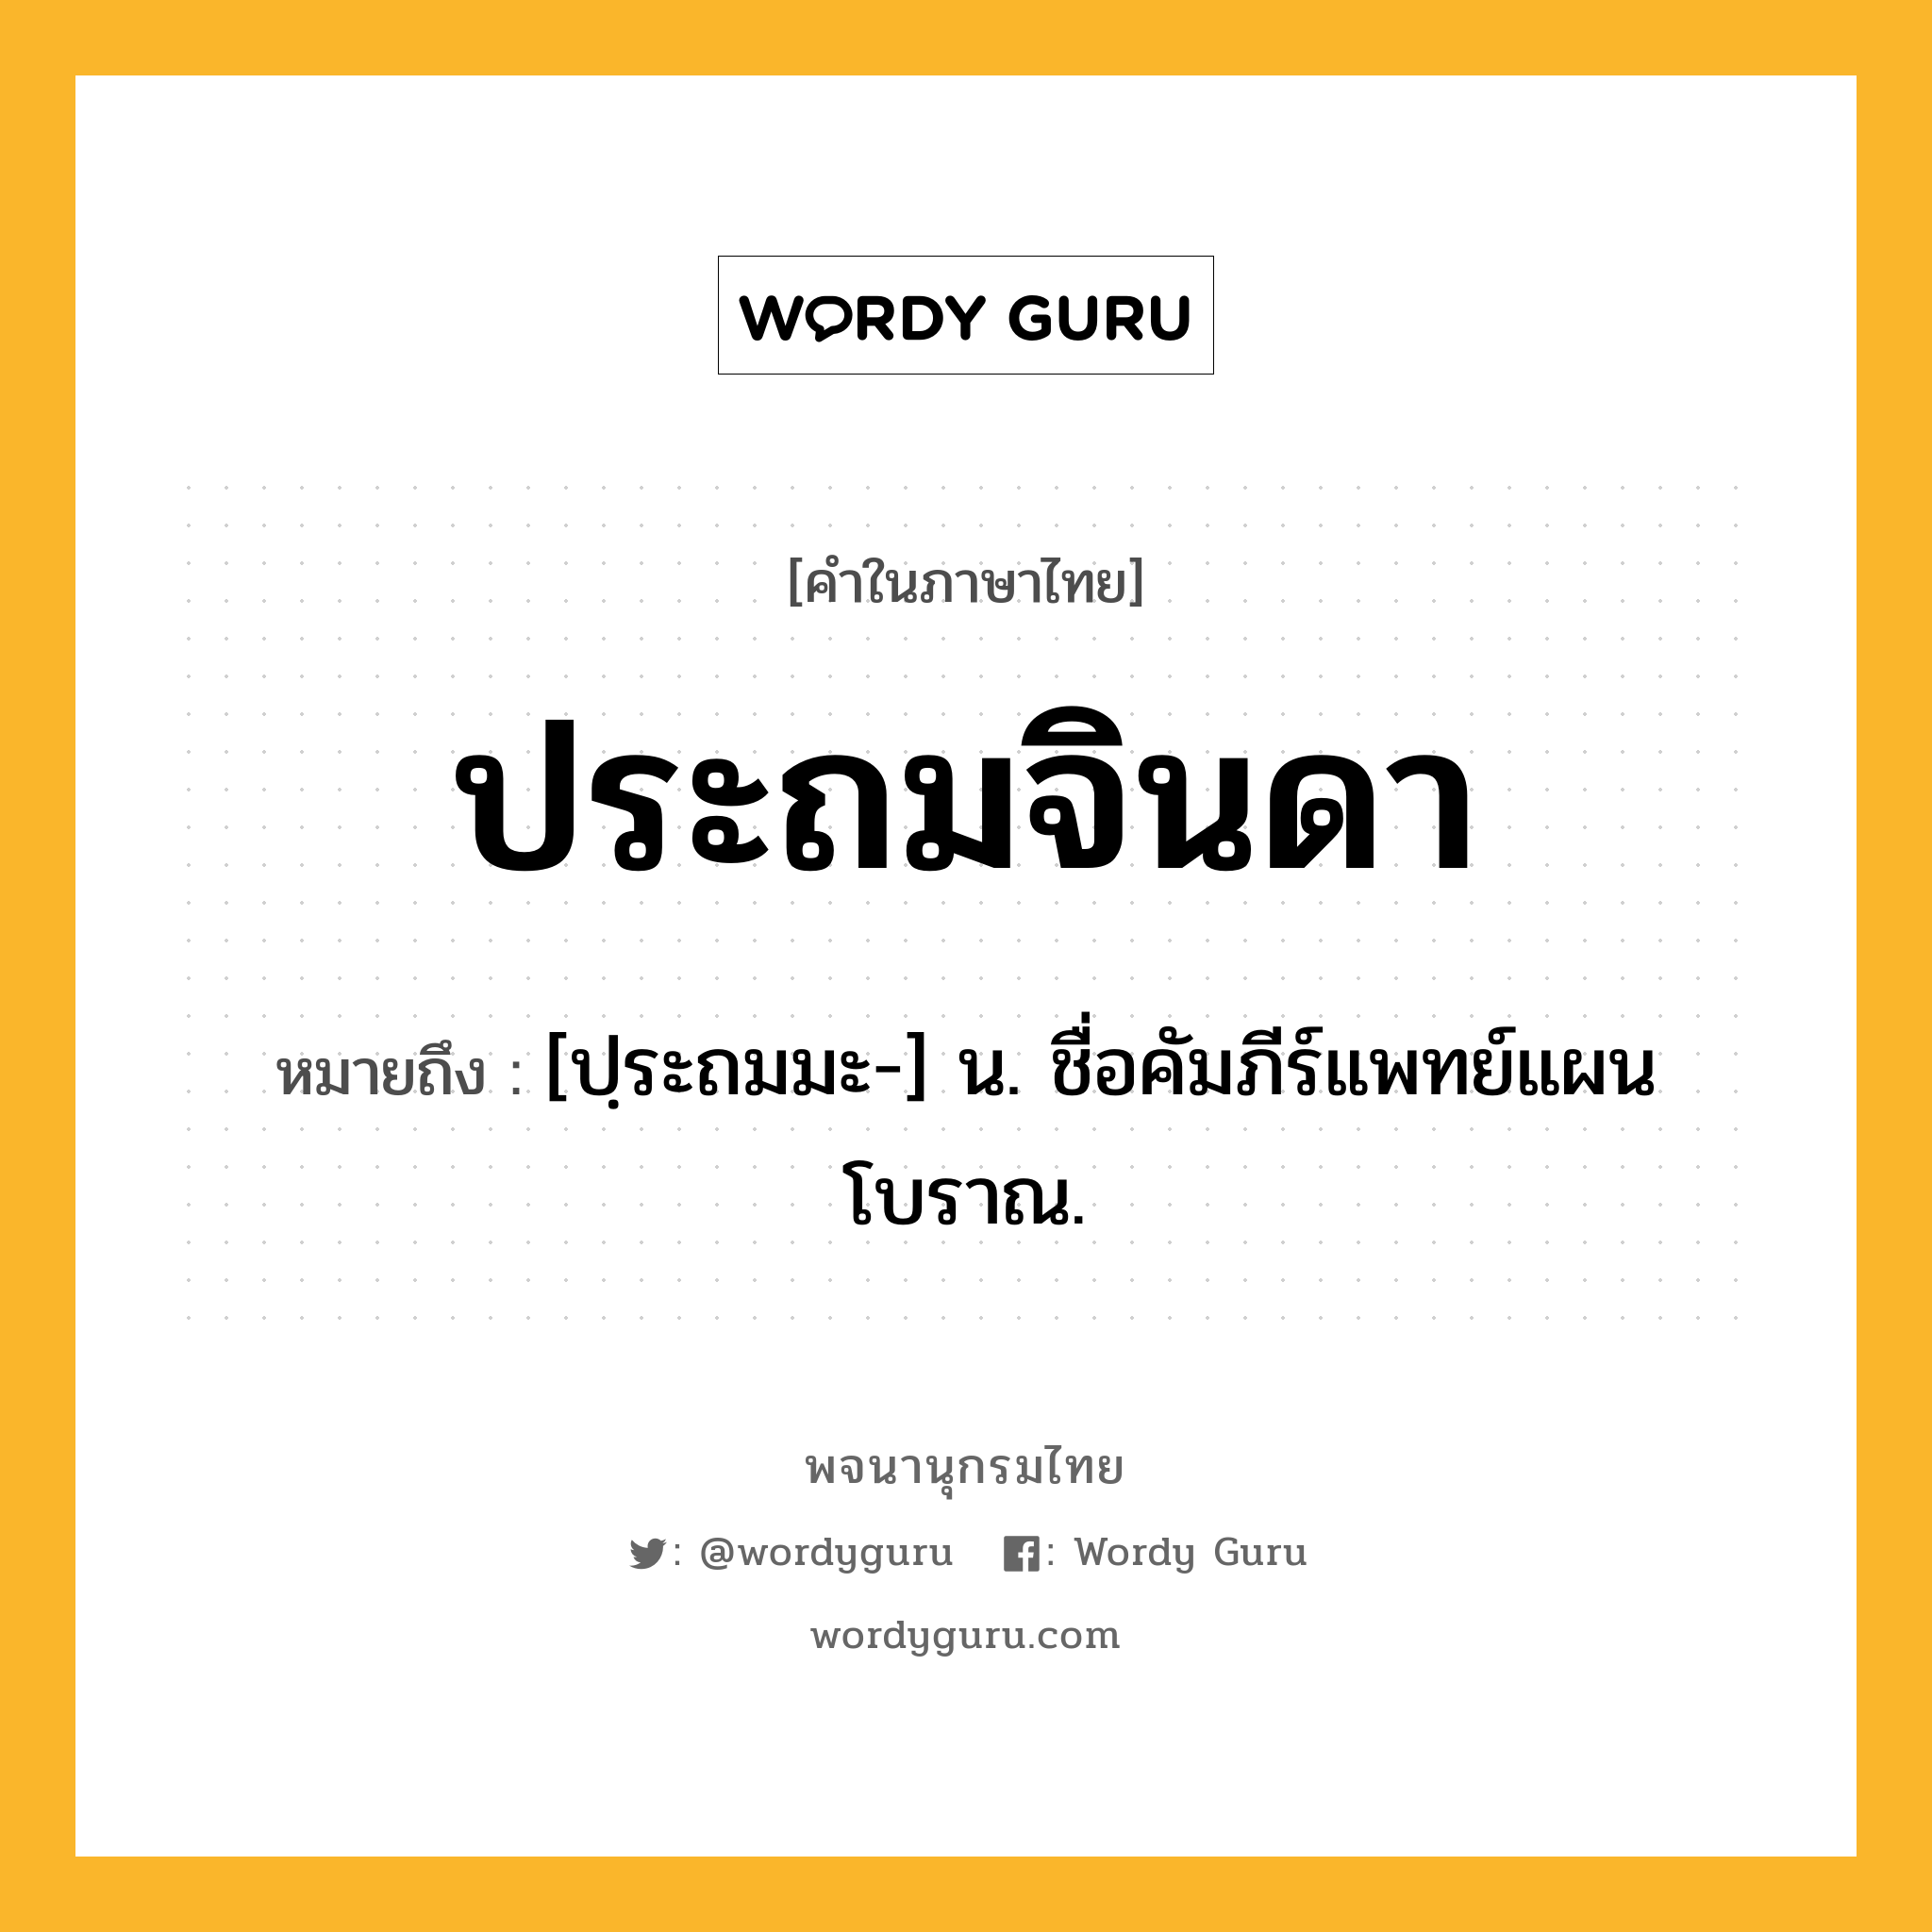 ประถมจินดา ความหมาย หมายถึงอะไร?, คำในภาษาไทย ประถมจินดา หมายถึง [ปฺระถมมะ-] น. ชื่อคัมภีร์แพทย์แผนโบราณ.